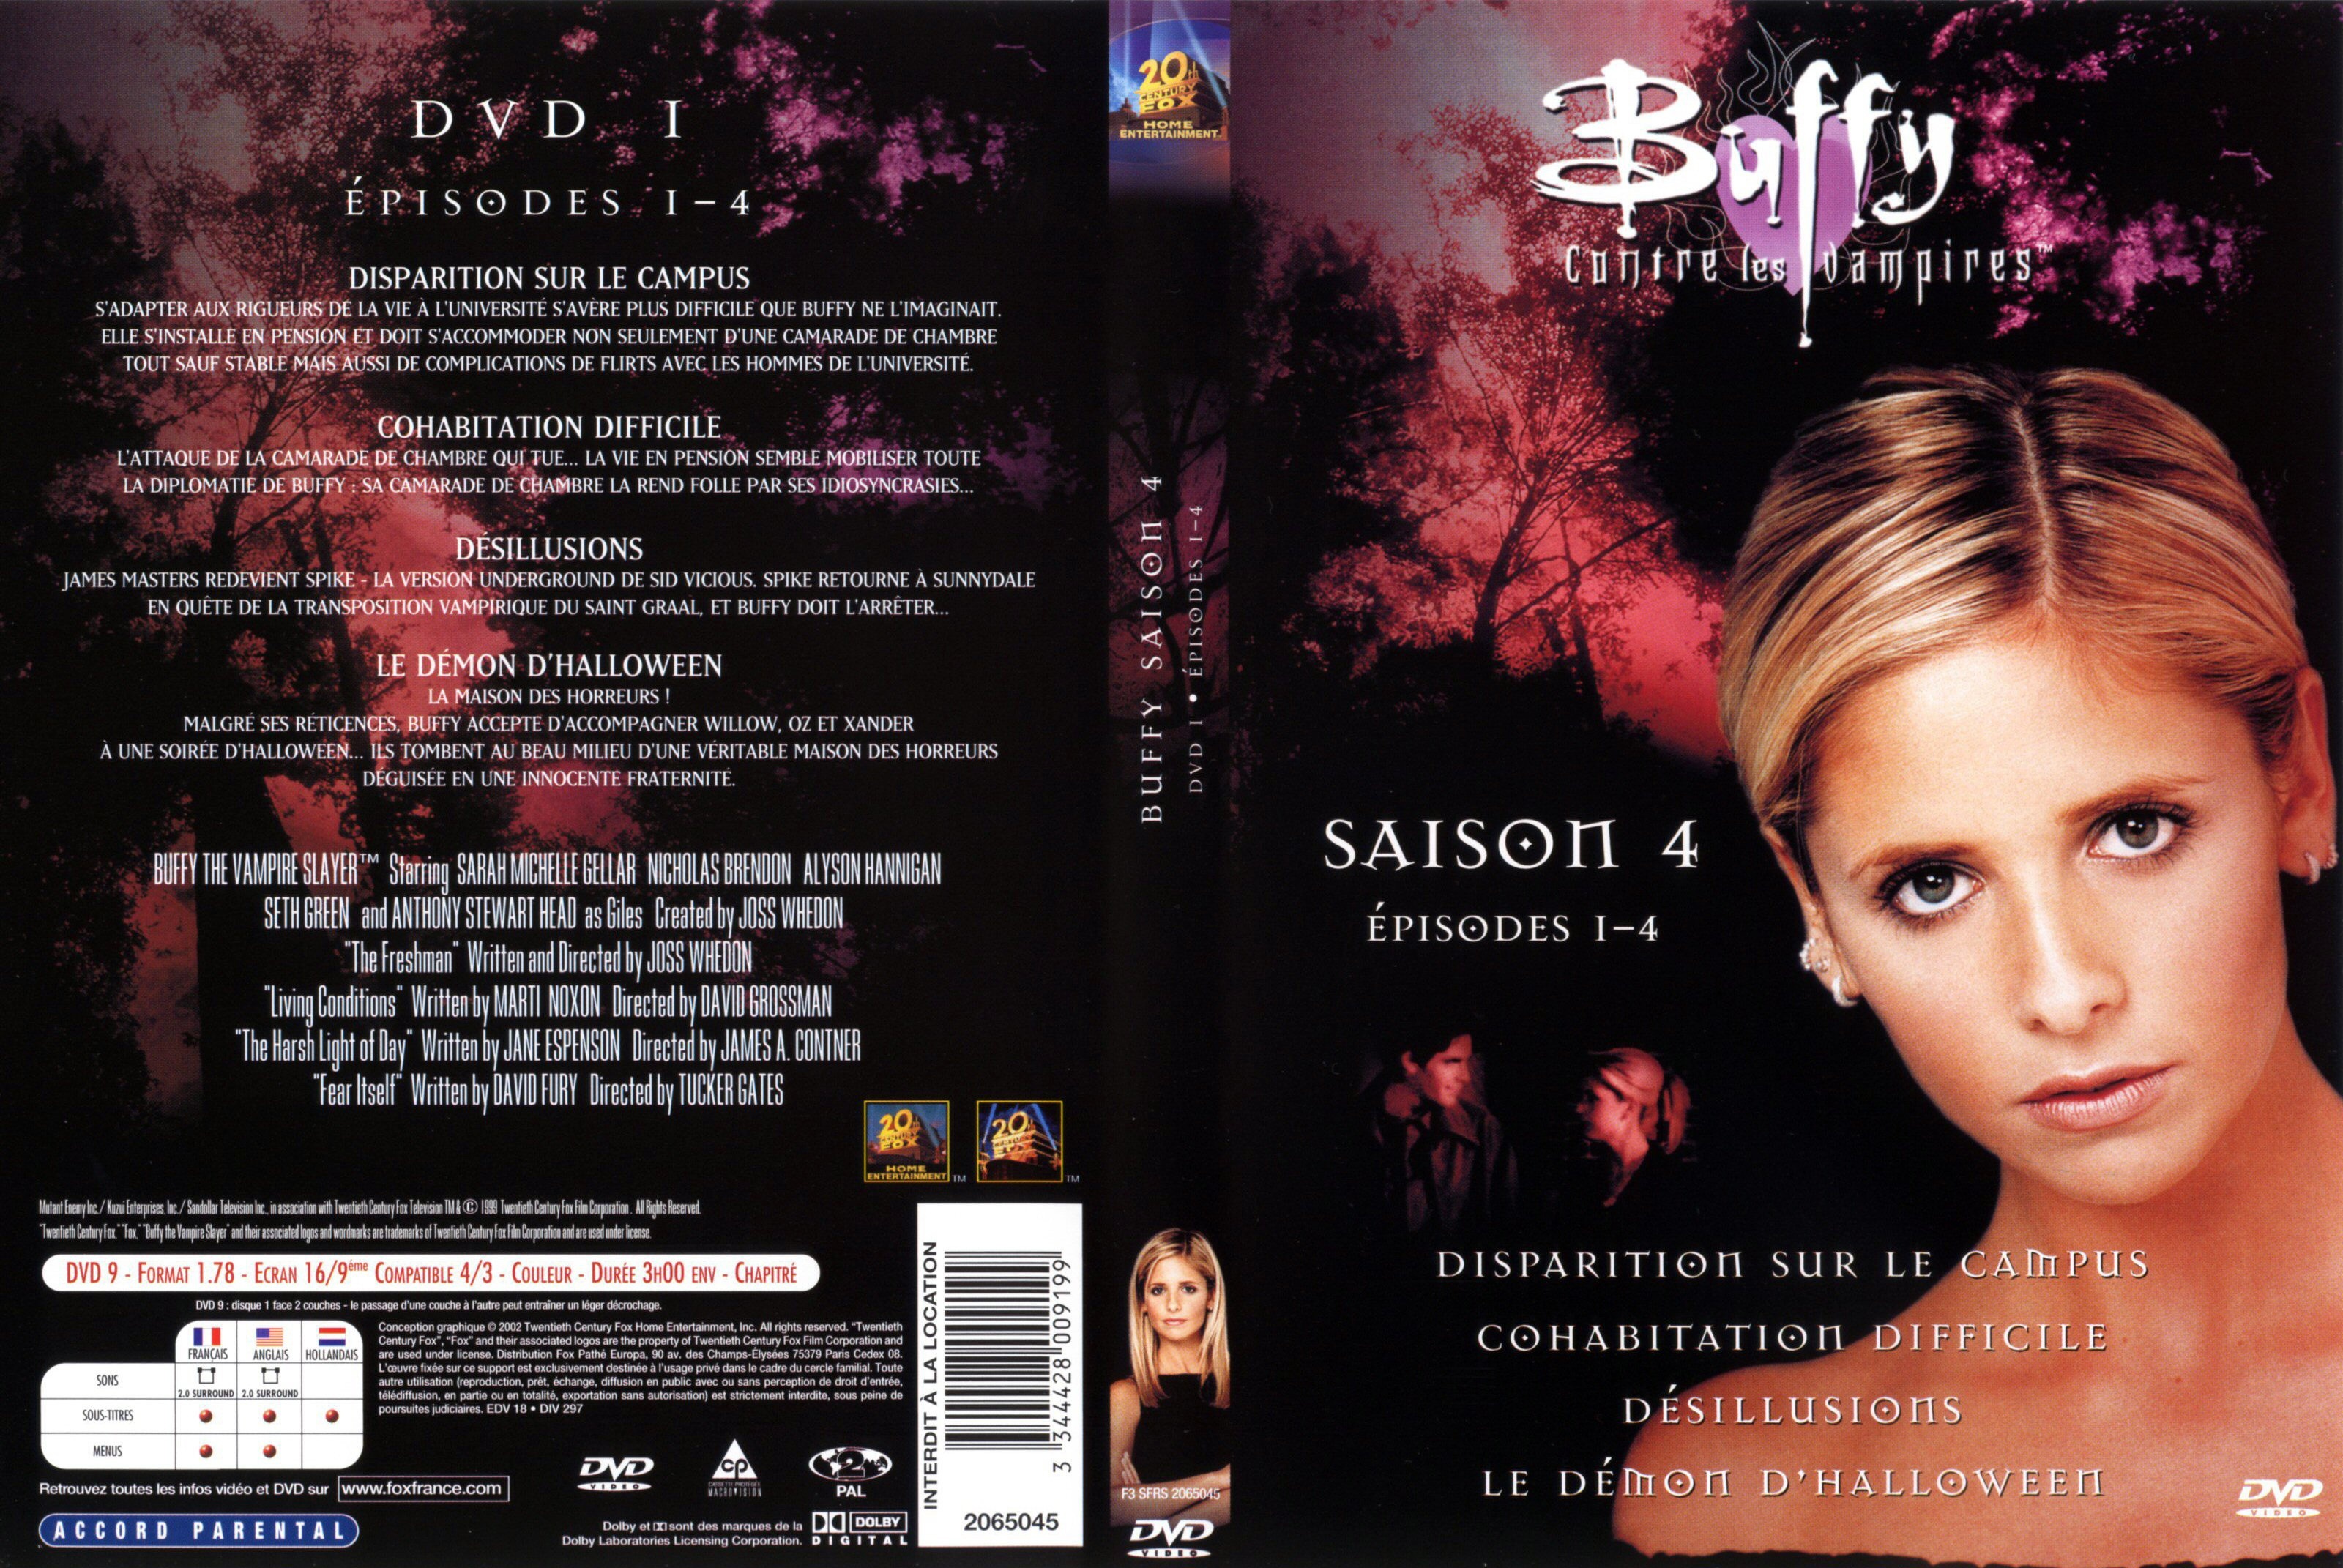 Jaquette DVD Buffy contre les vampires Saison 4 DVD 1